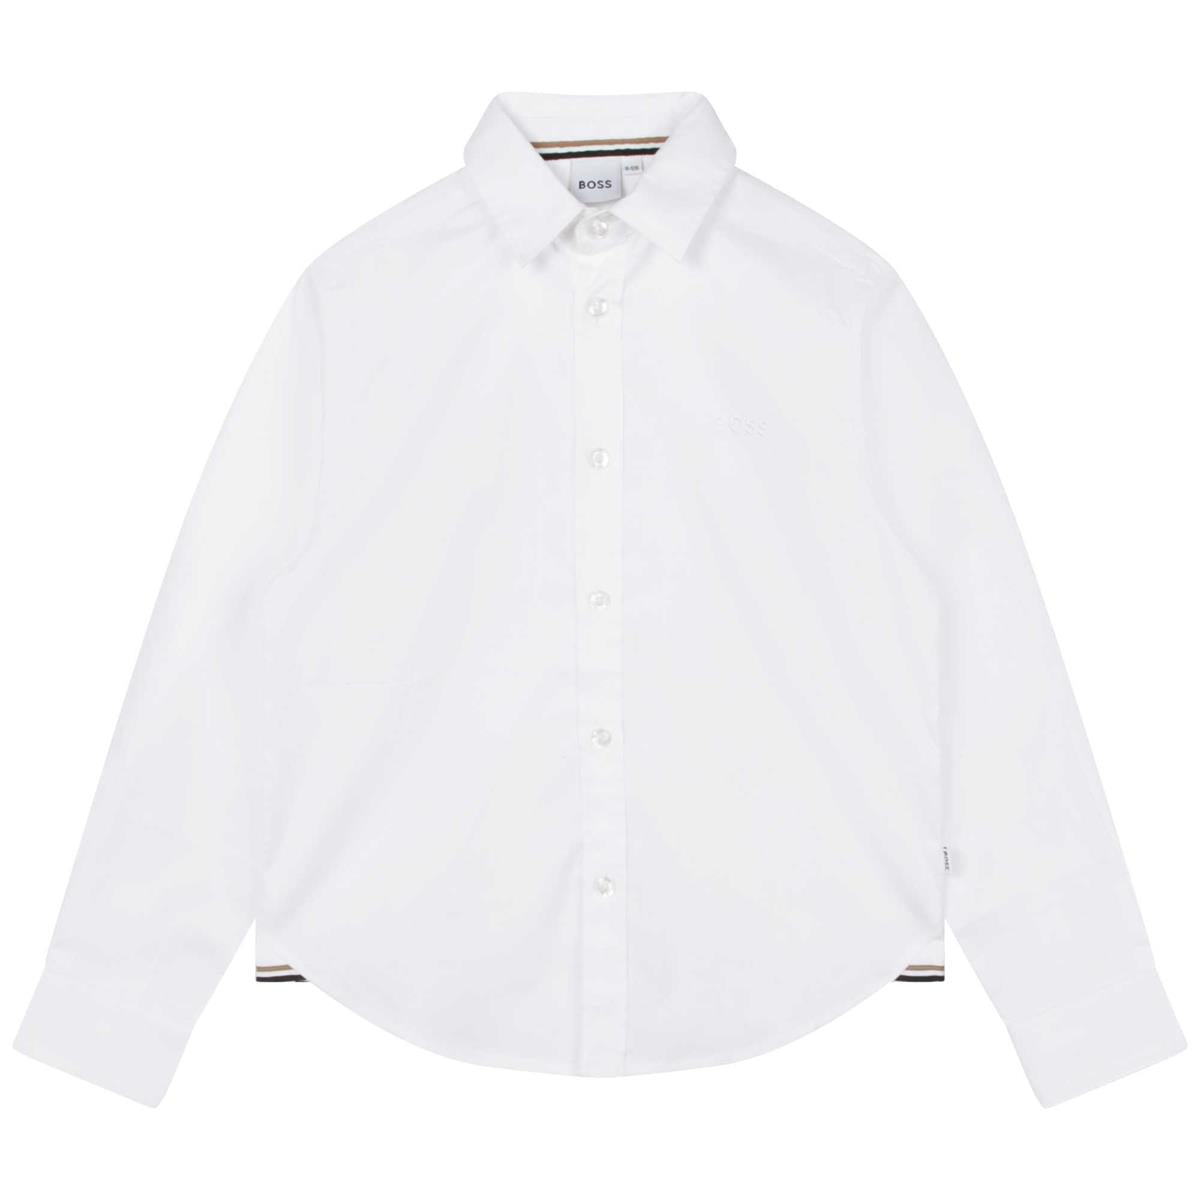 Boys White Cotton Shirt